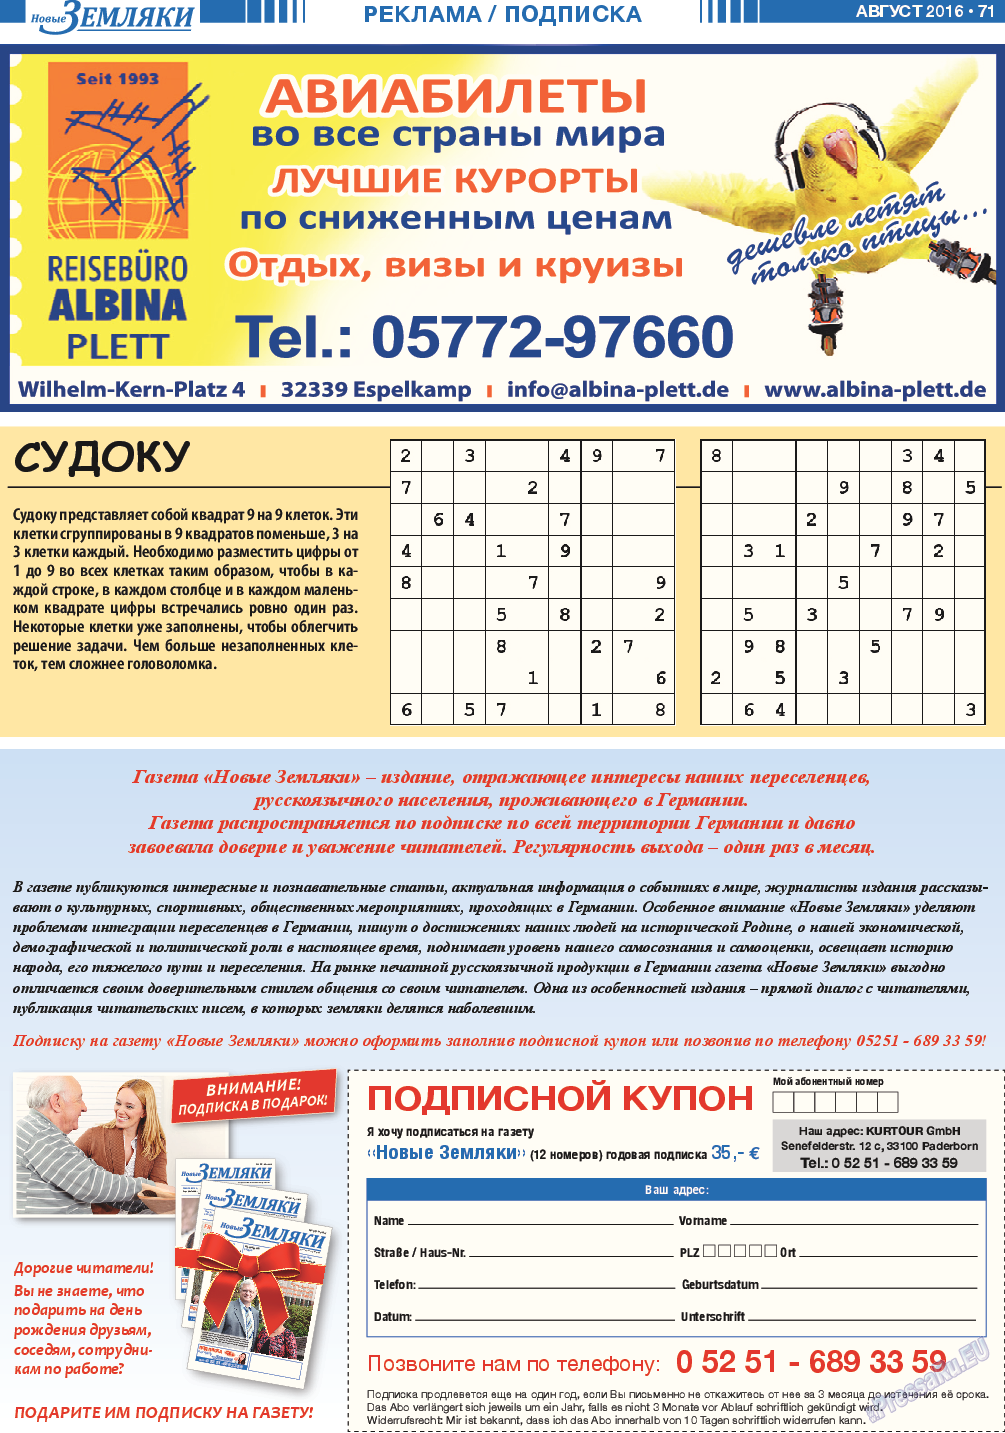 Новые Земляки, газета. 2016 №8 стр.71